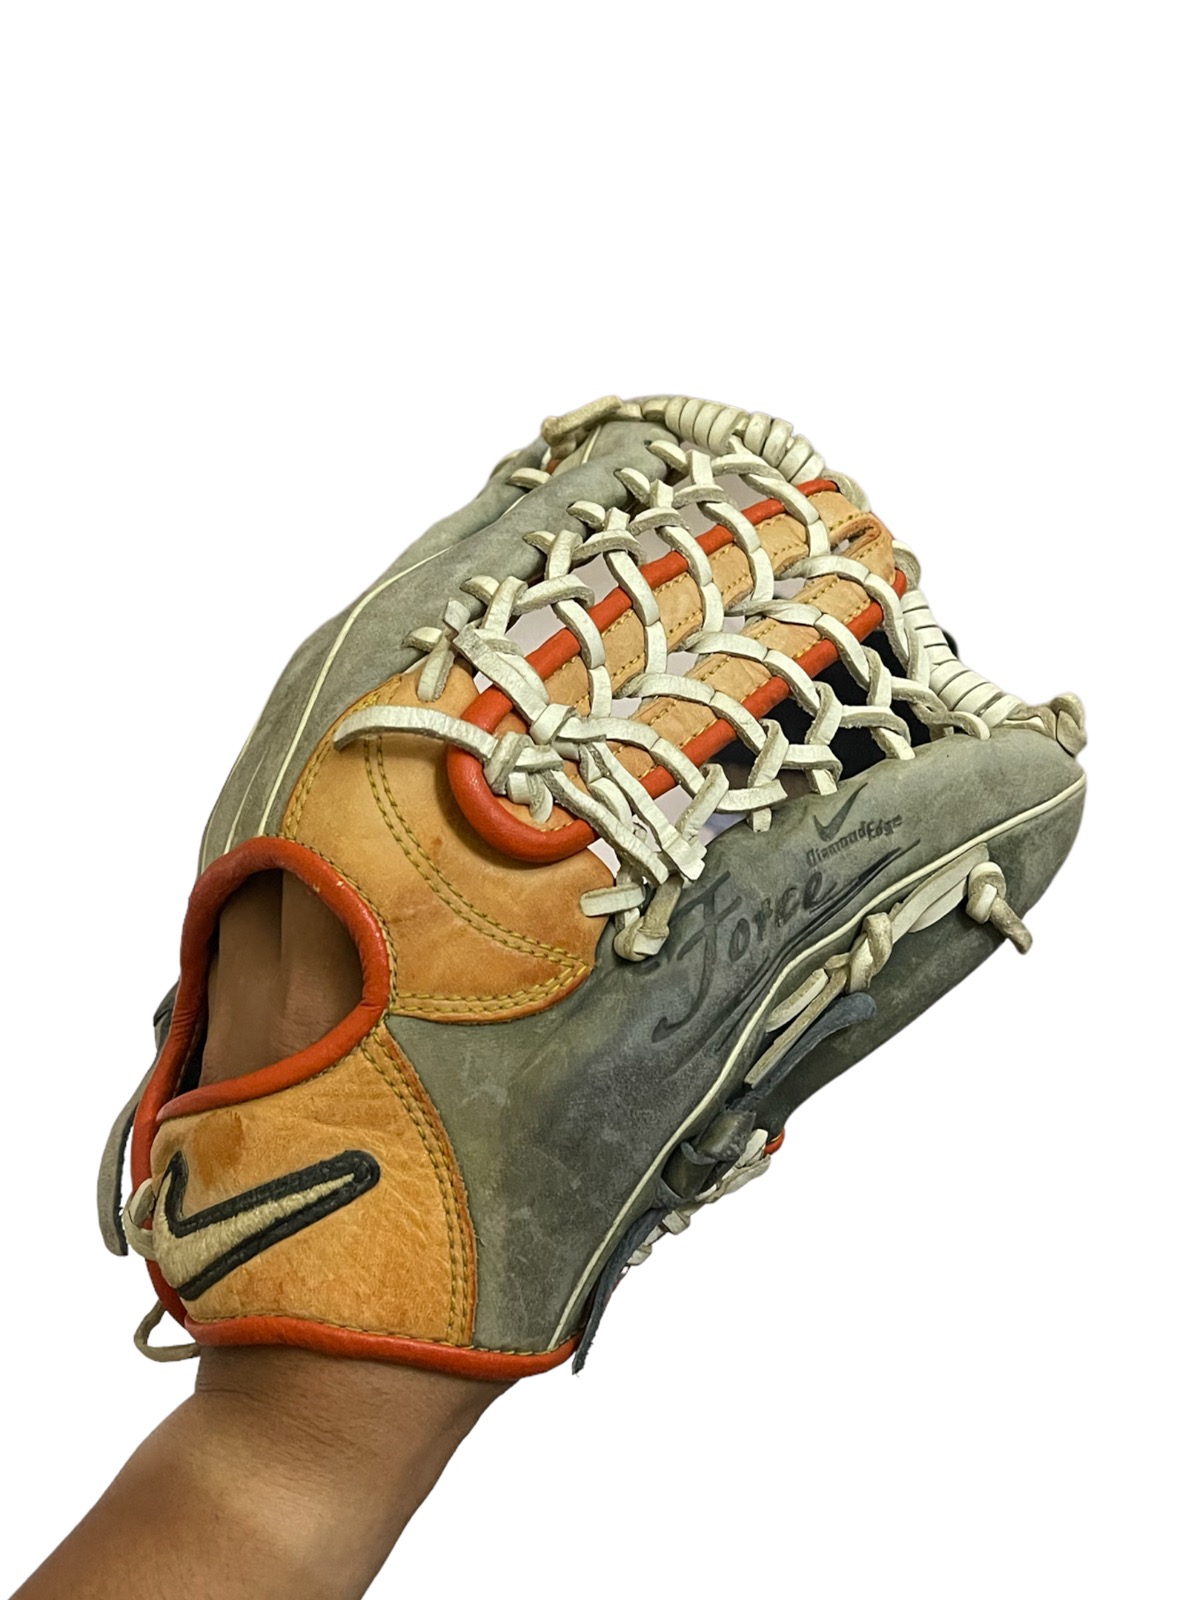 Nike force baseball glove - 1